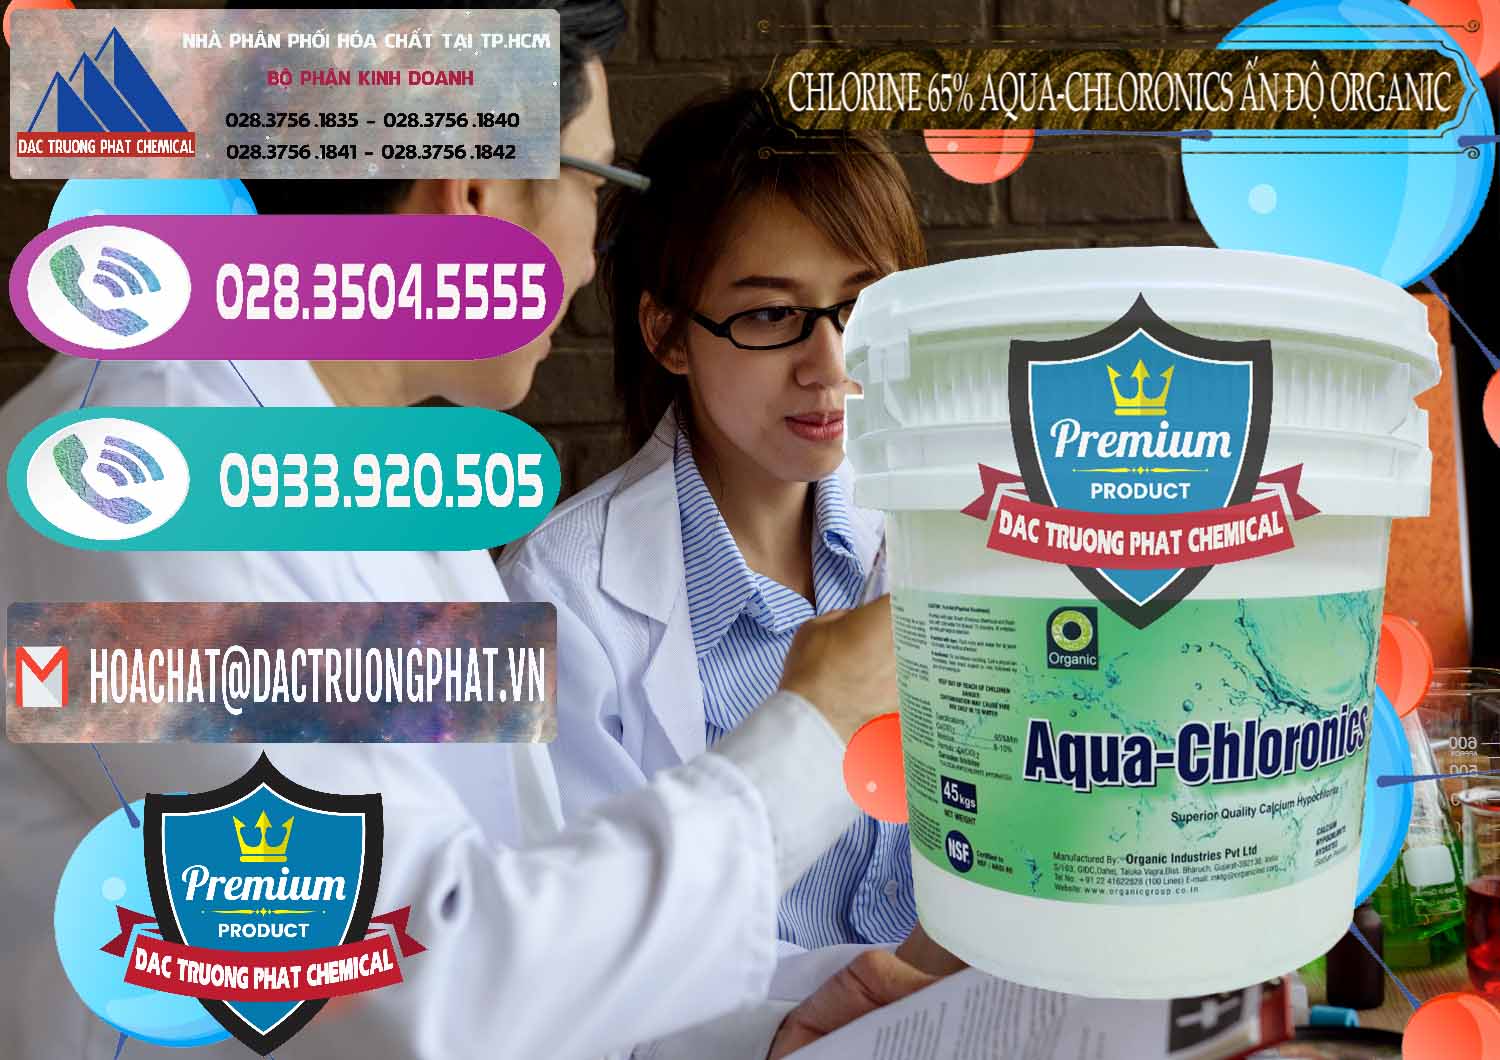 Đơn vị bán & cung cấp Chlorine – Clorin 65% Aqua-Chloronics Ấn Độ Organic India - 0210 - Công ty chuyên bán ( phân phối ) hóa chất tại TP.HCM - hoachatxulynuoc.com